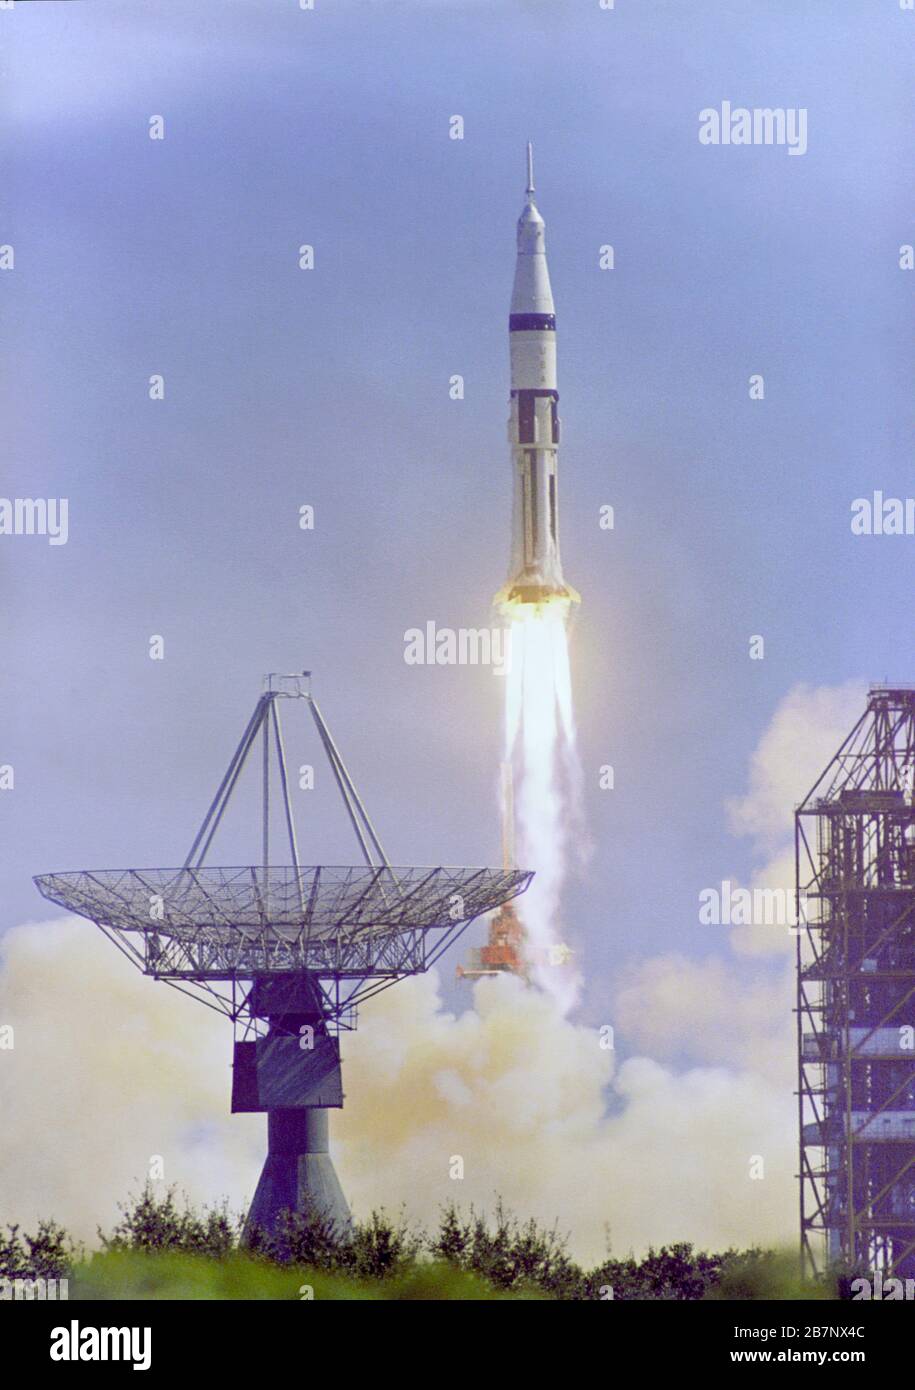 Apollo 7 - NASA, 1968. L'Apollo 7 Saturn IB lancé à partir du complexe de lancement du Kennedy Space Center 34 à 11 h 03 le 11 octobre 1968. Cette image montre l'antenne de suivi sur la gauche et une structure de service de tampon sur la droite. Banque D'Images